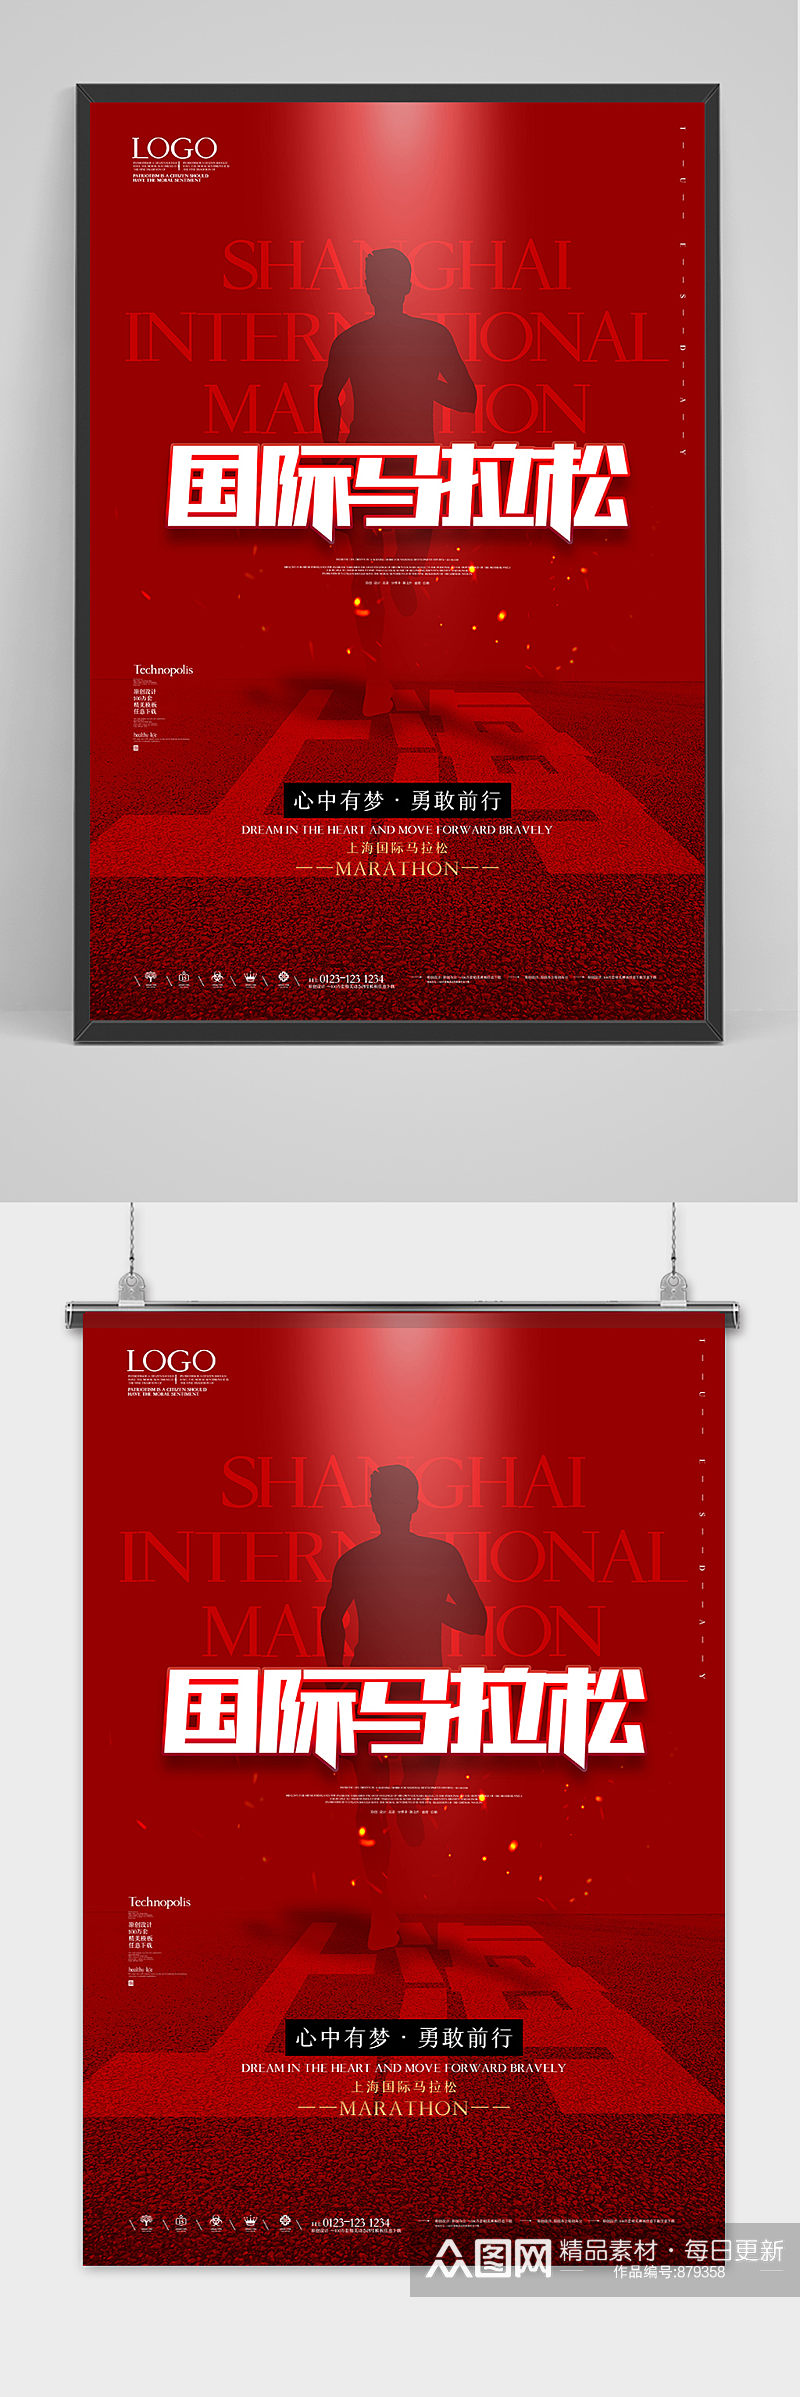 上海国际马拉松创意宣传海报素材